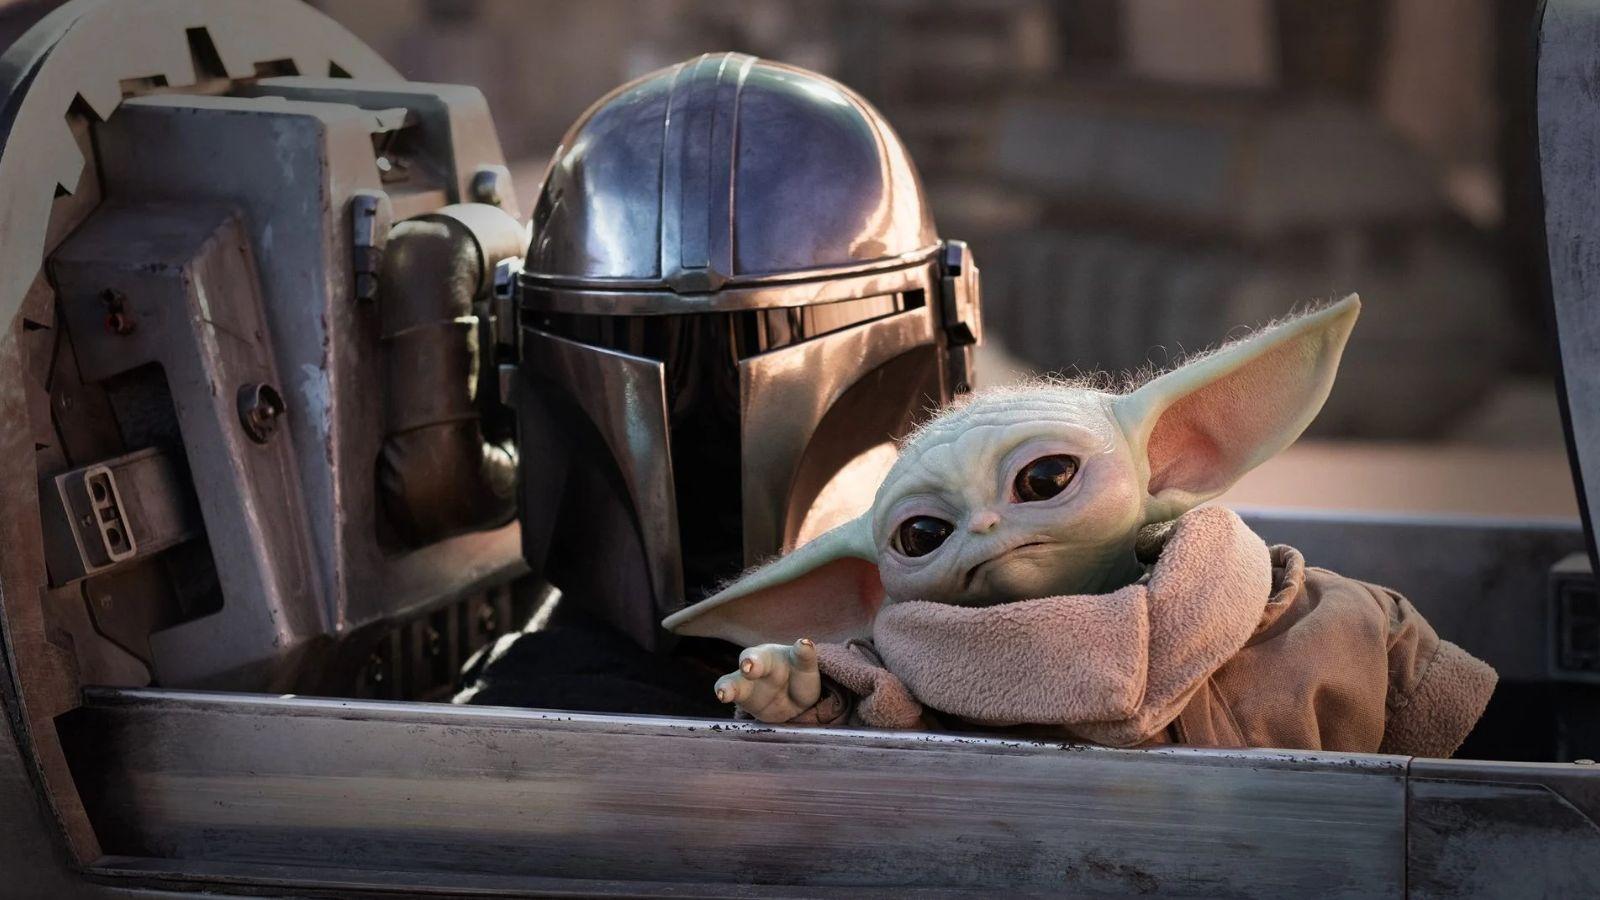 Baby Yoda : espèce, origine, pouvoirs tout ce qu'il faut savoir sur la  vedette surprise de la série Disney+ The Mandalorian - CNET France